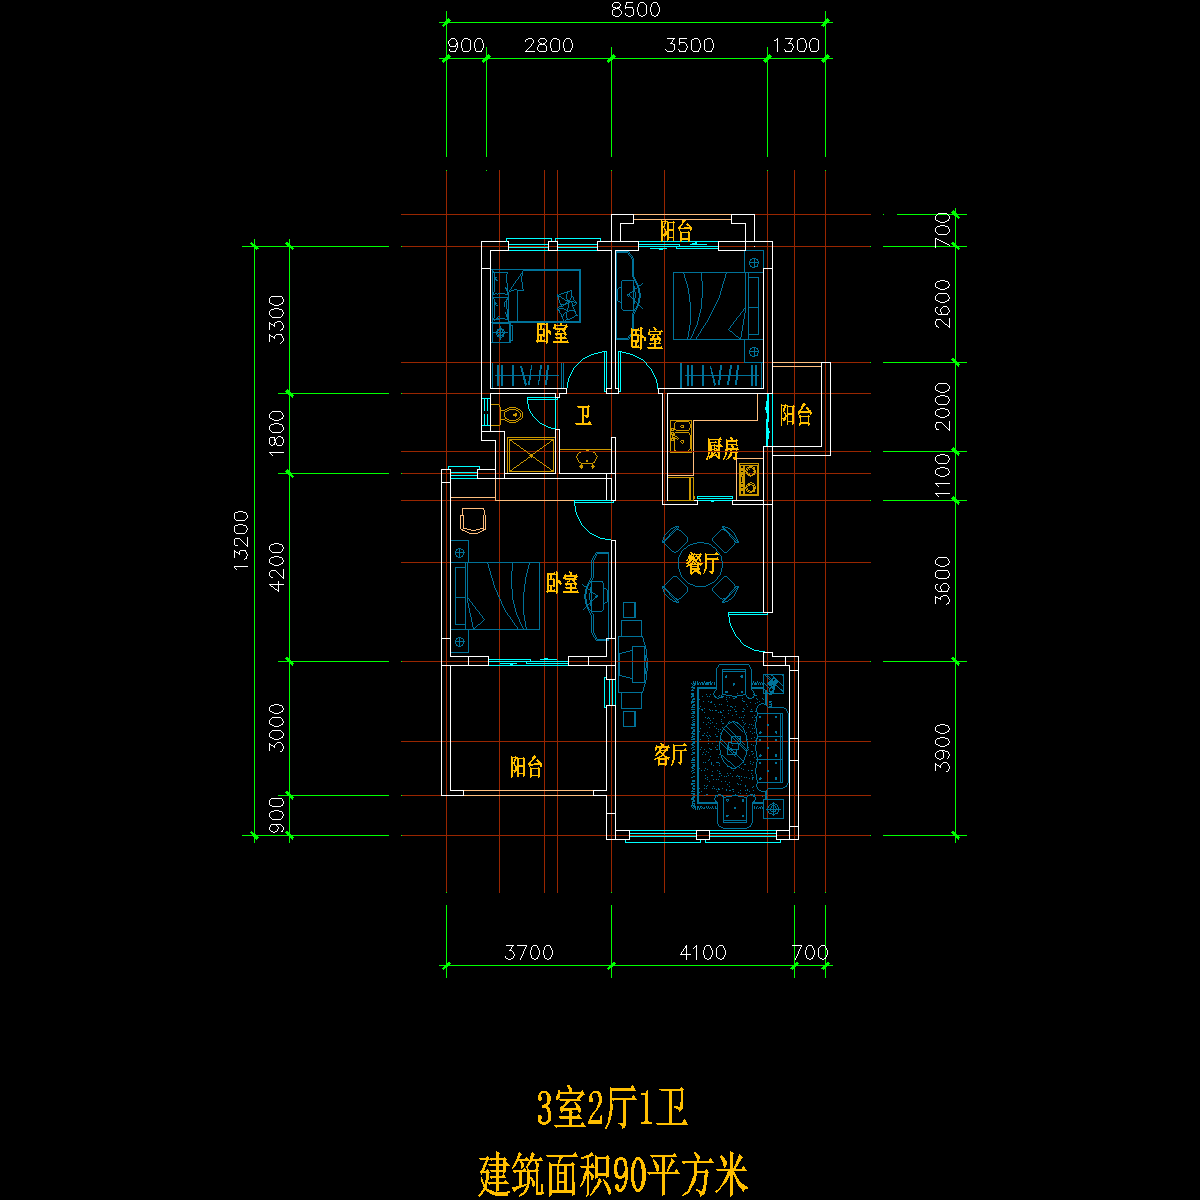 板式多层单户三室二厅一卫户型CAD图纸 - 1